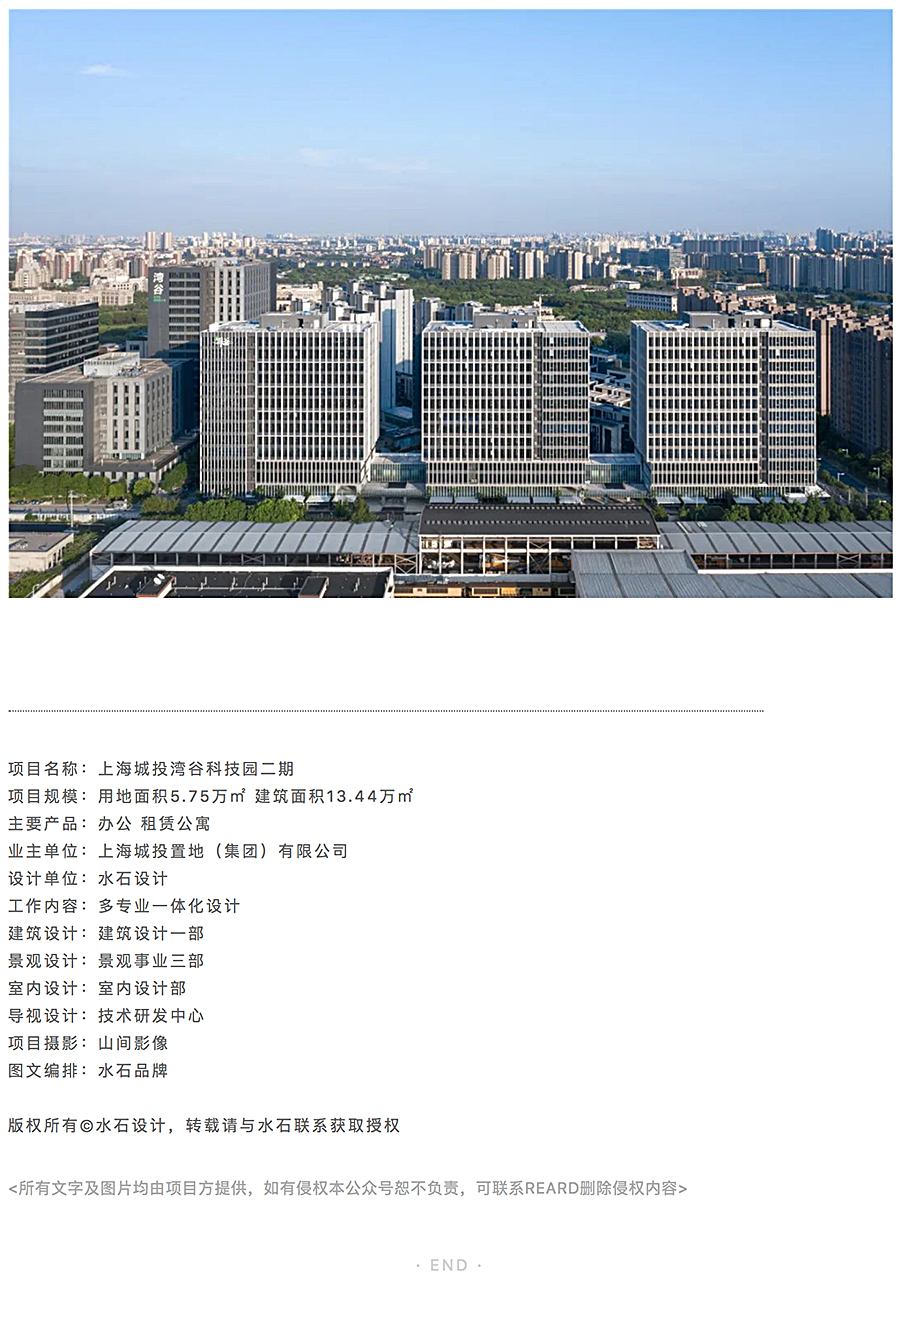 上海城投湾谷科技园二期_0015_图层-16.jpg